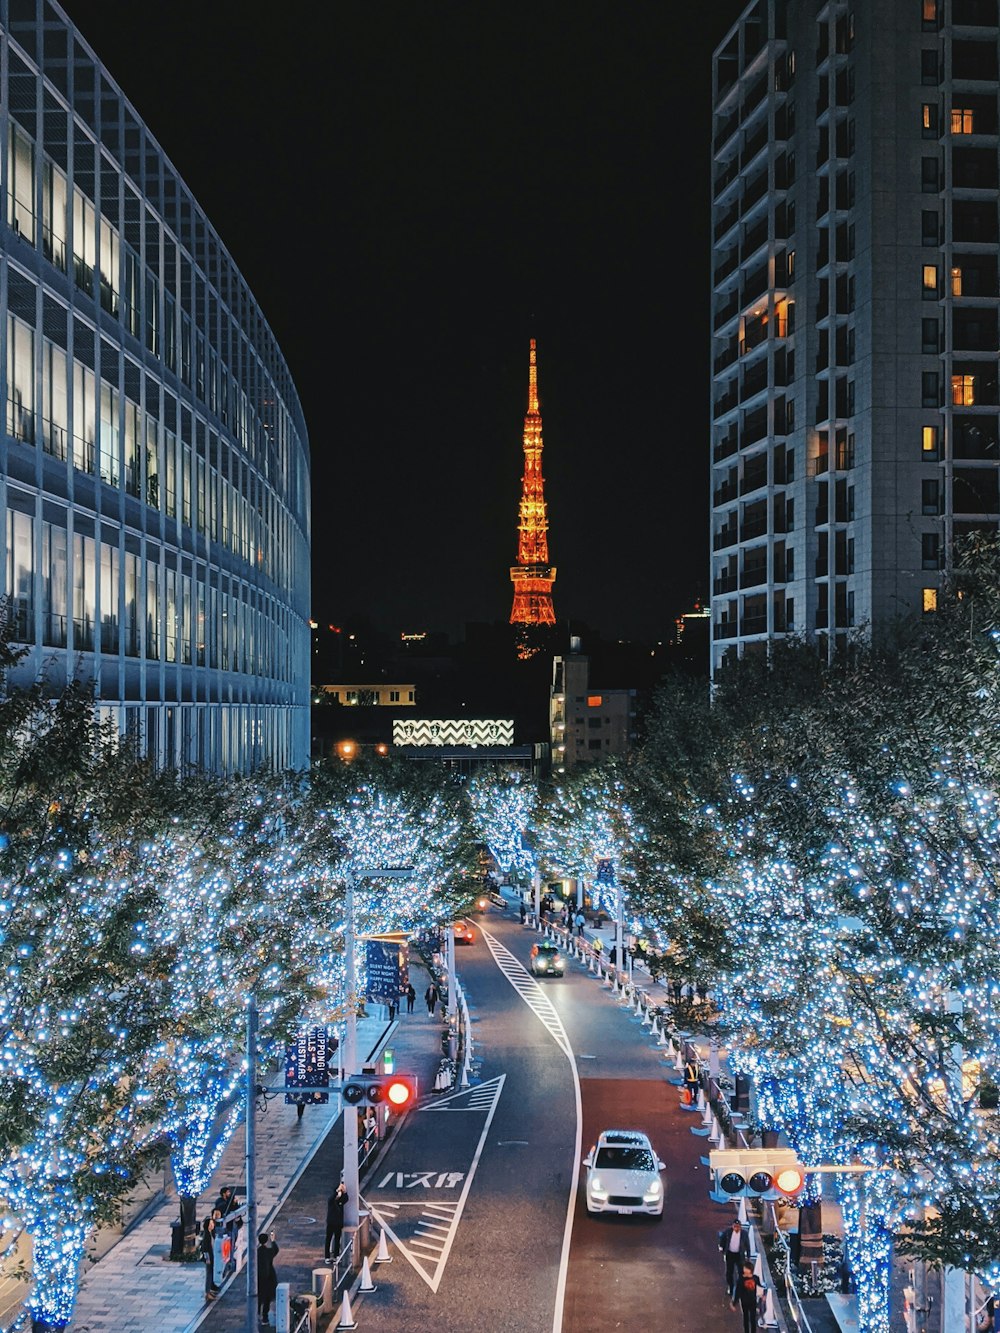 Voitures sur la route près des immeubles de grande hauteur pendant la nuit